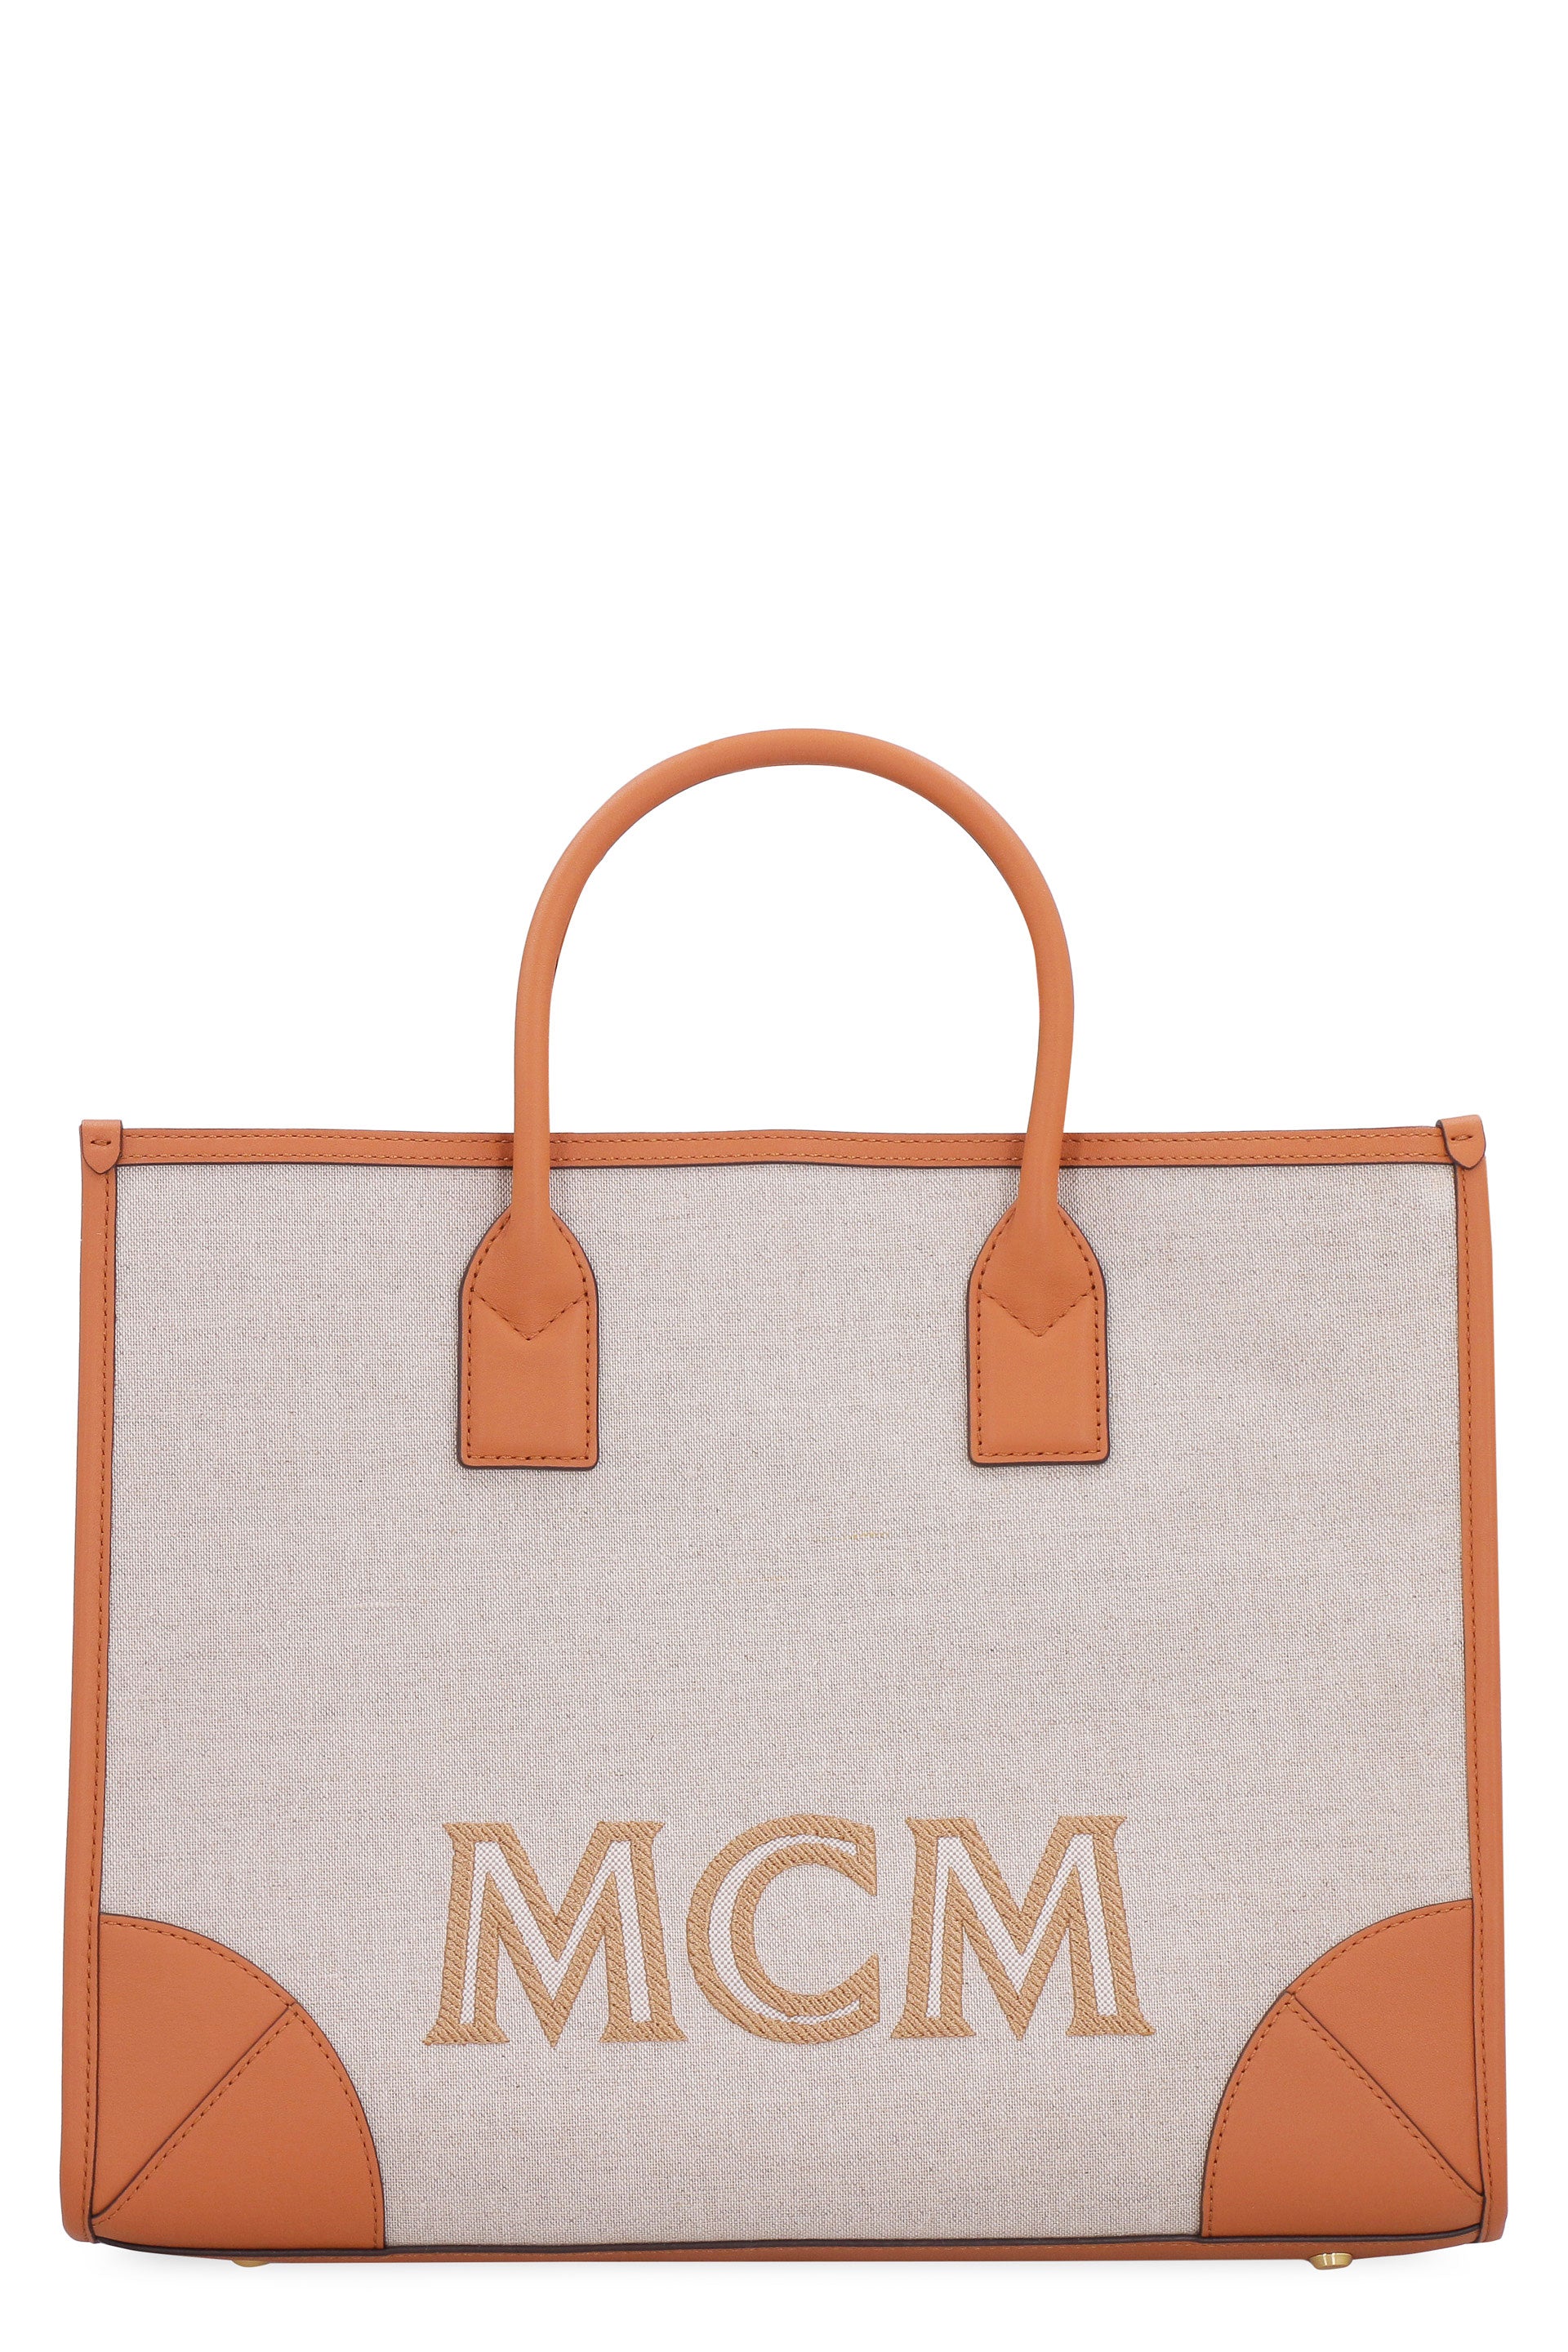 M9082 | shoulder bag #1 | WERKSTATT:MÜNCHEN | Online Store - FASCINATE THE  R OSAKA